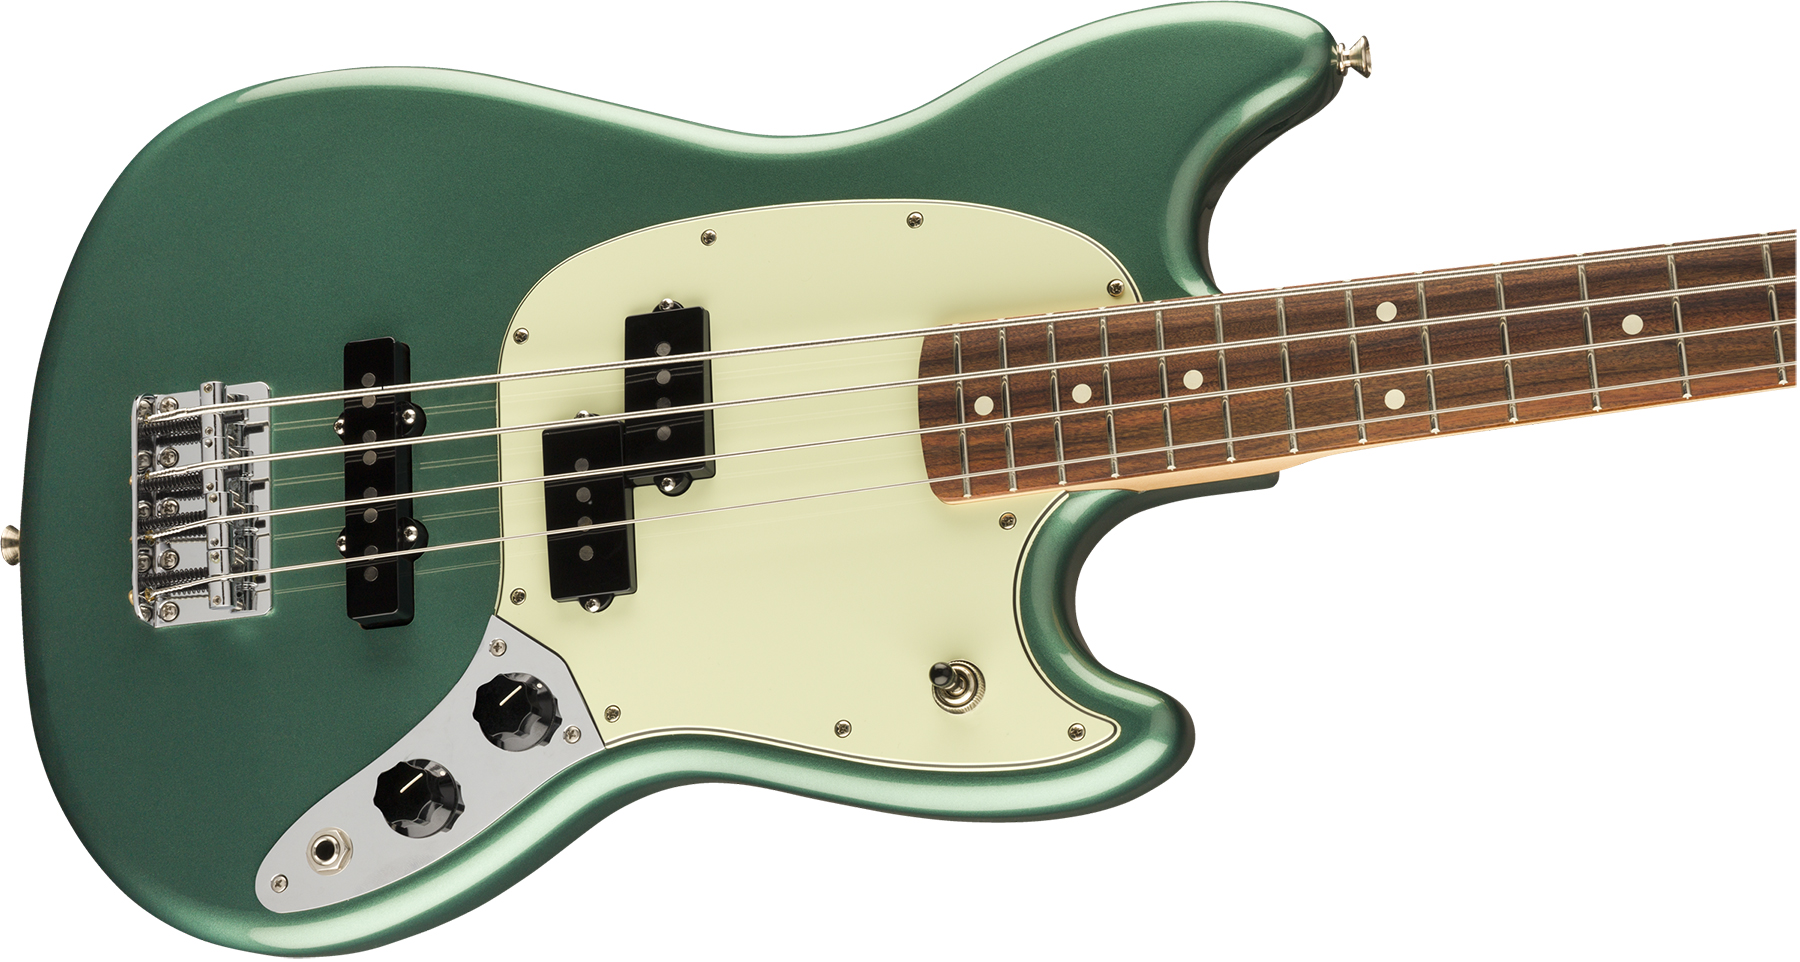 Fender Mustang Bass Pj Player Ltd Mex Pf - Sherwood Green Metallic - E-Bass für Kinder - Variation 2